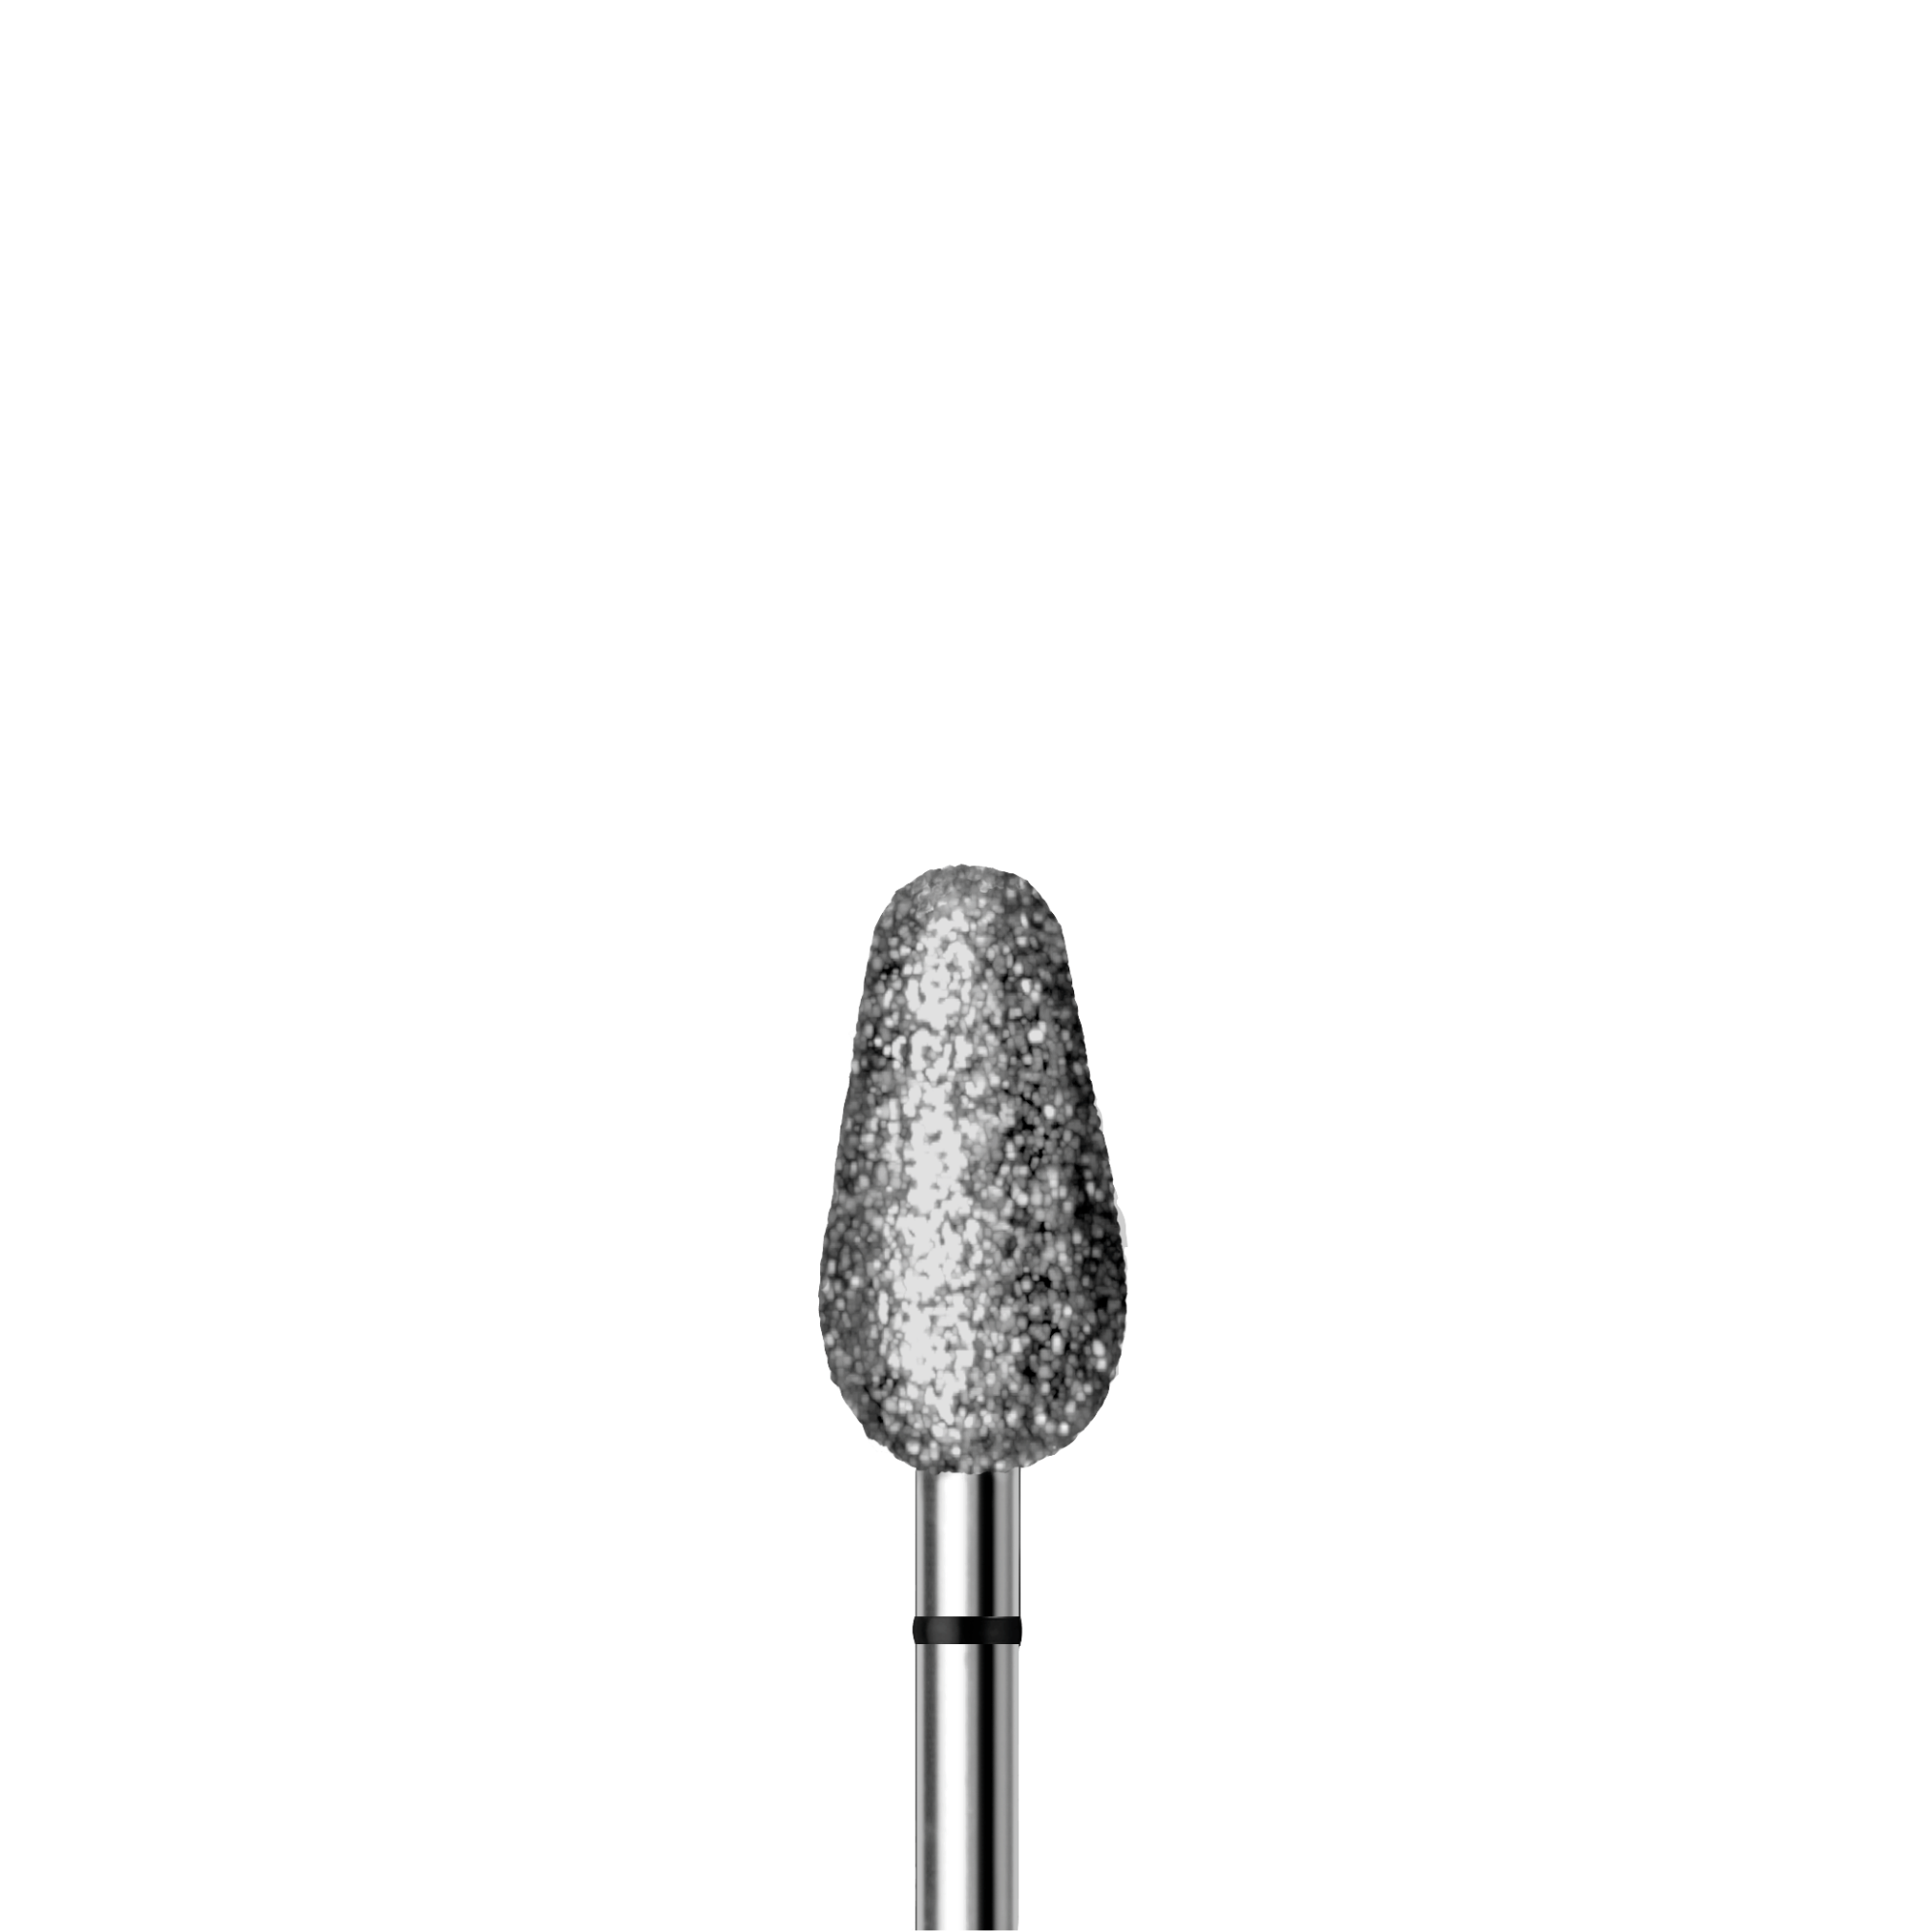 Fraise diamant - Abrasion des callosités dures - 6,5 mm - 5894 - Busch